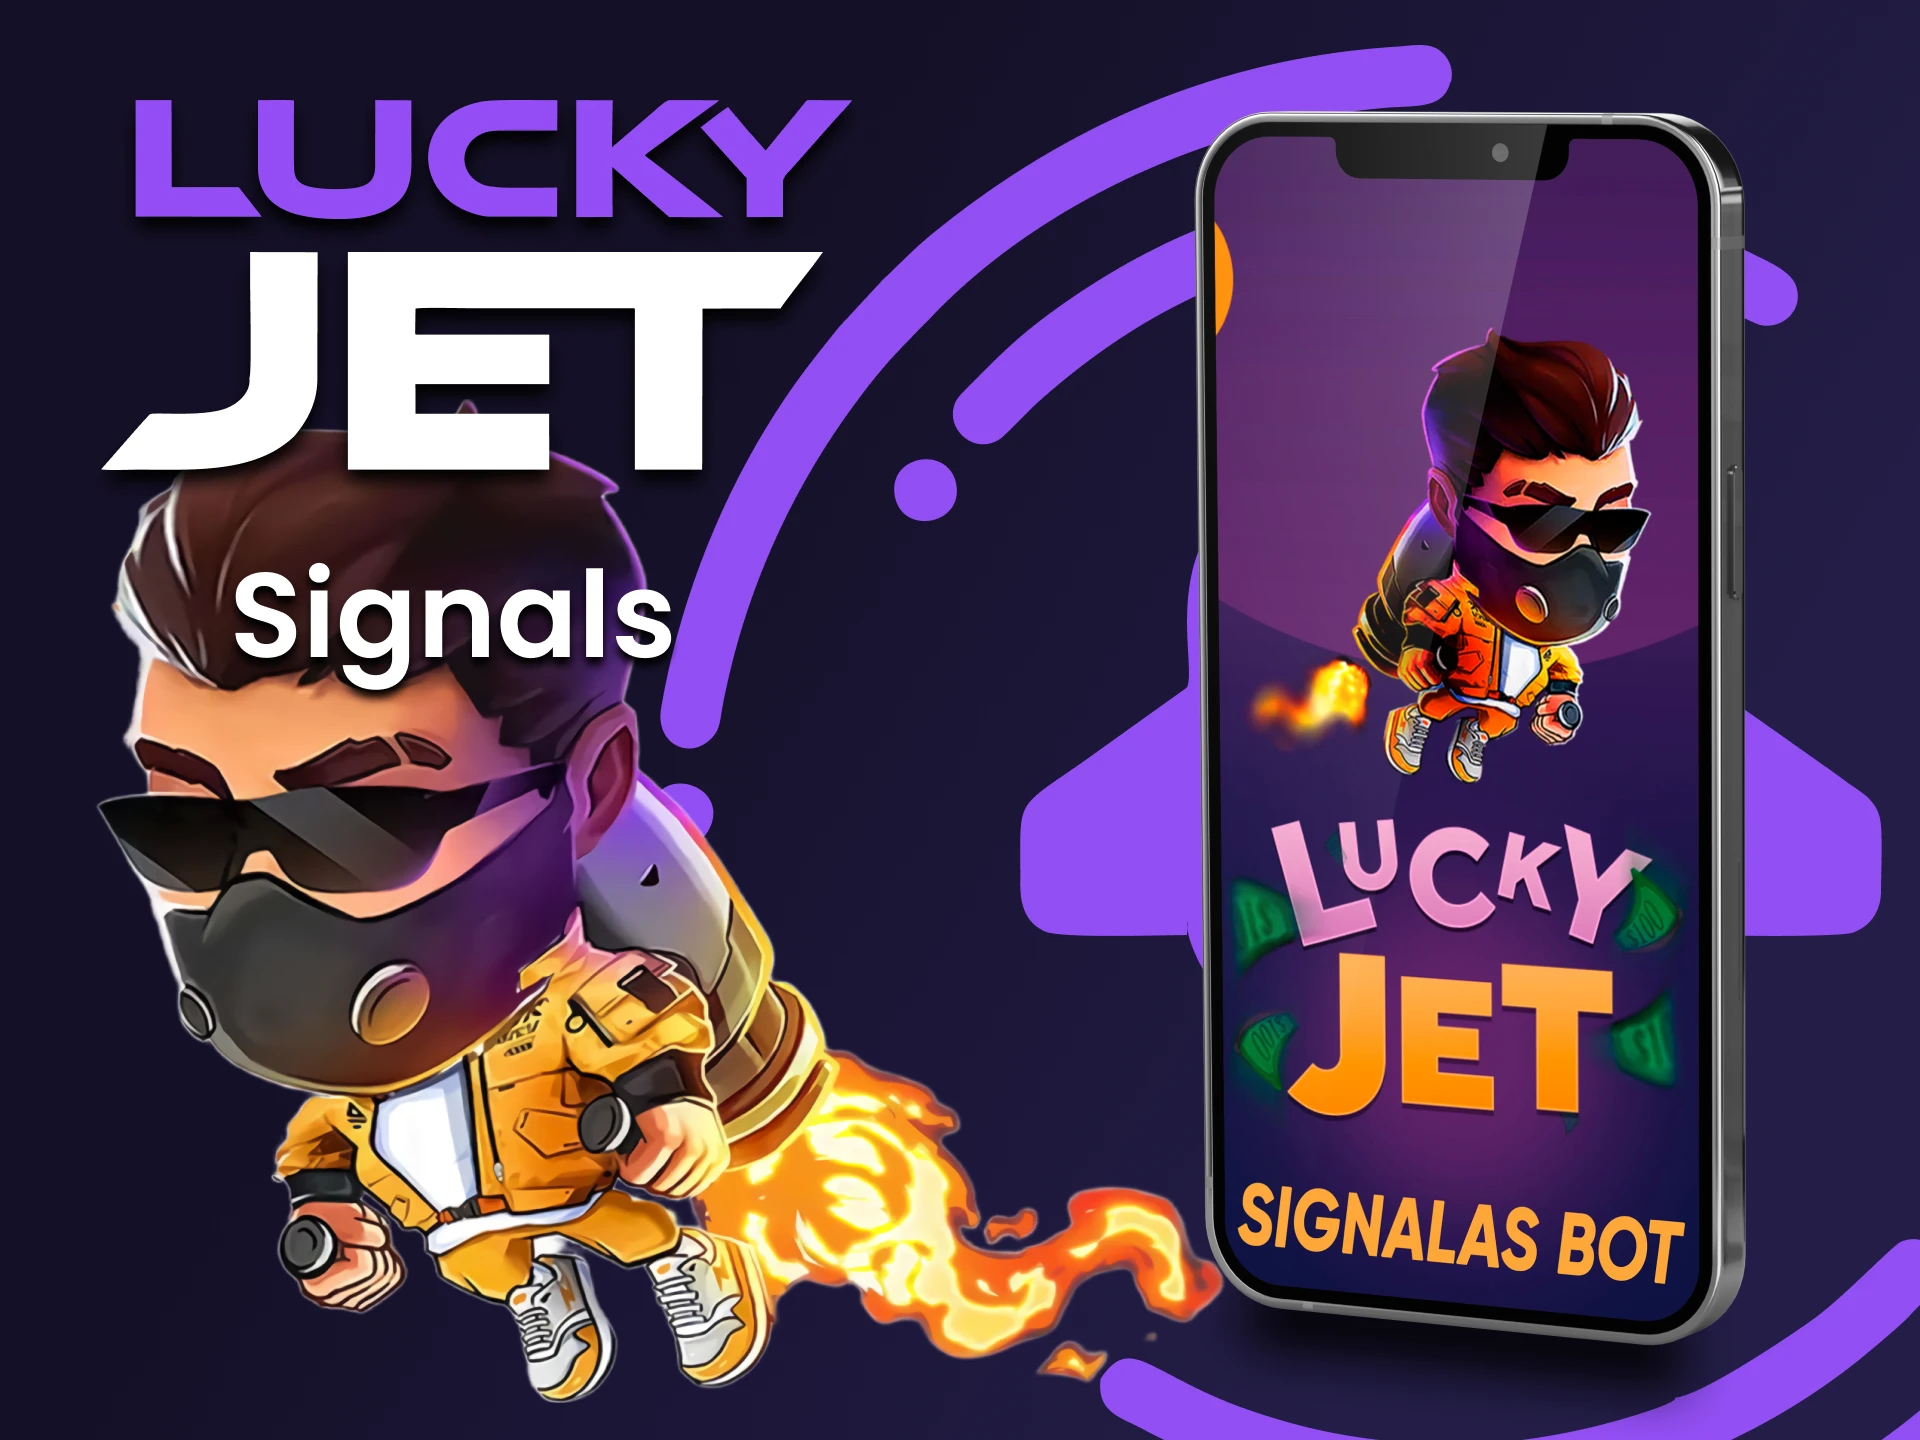 Utilisez le signal pour jouer à Lucky Jet, qui peut être utilisé via l'application.